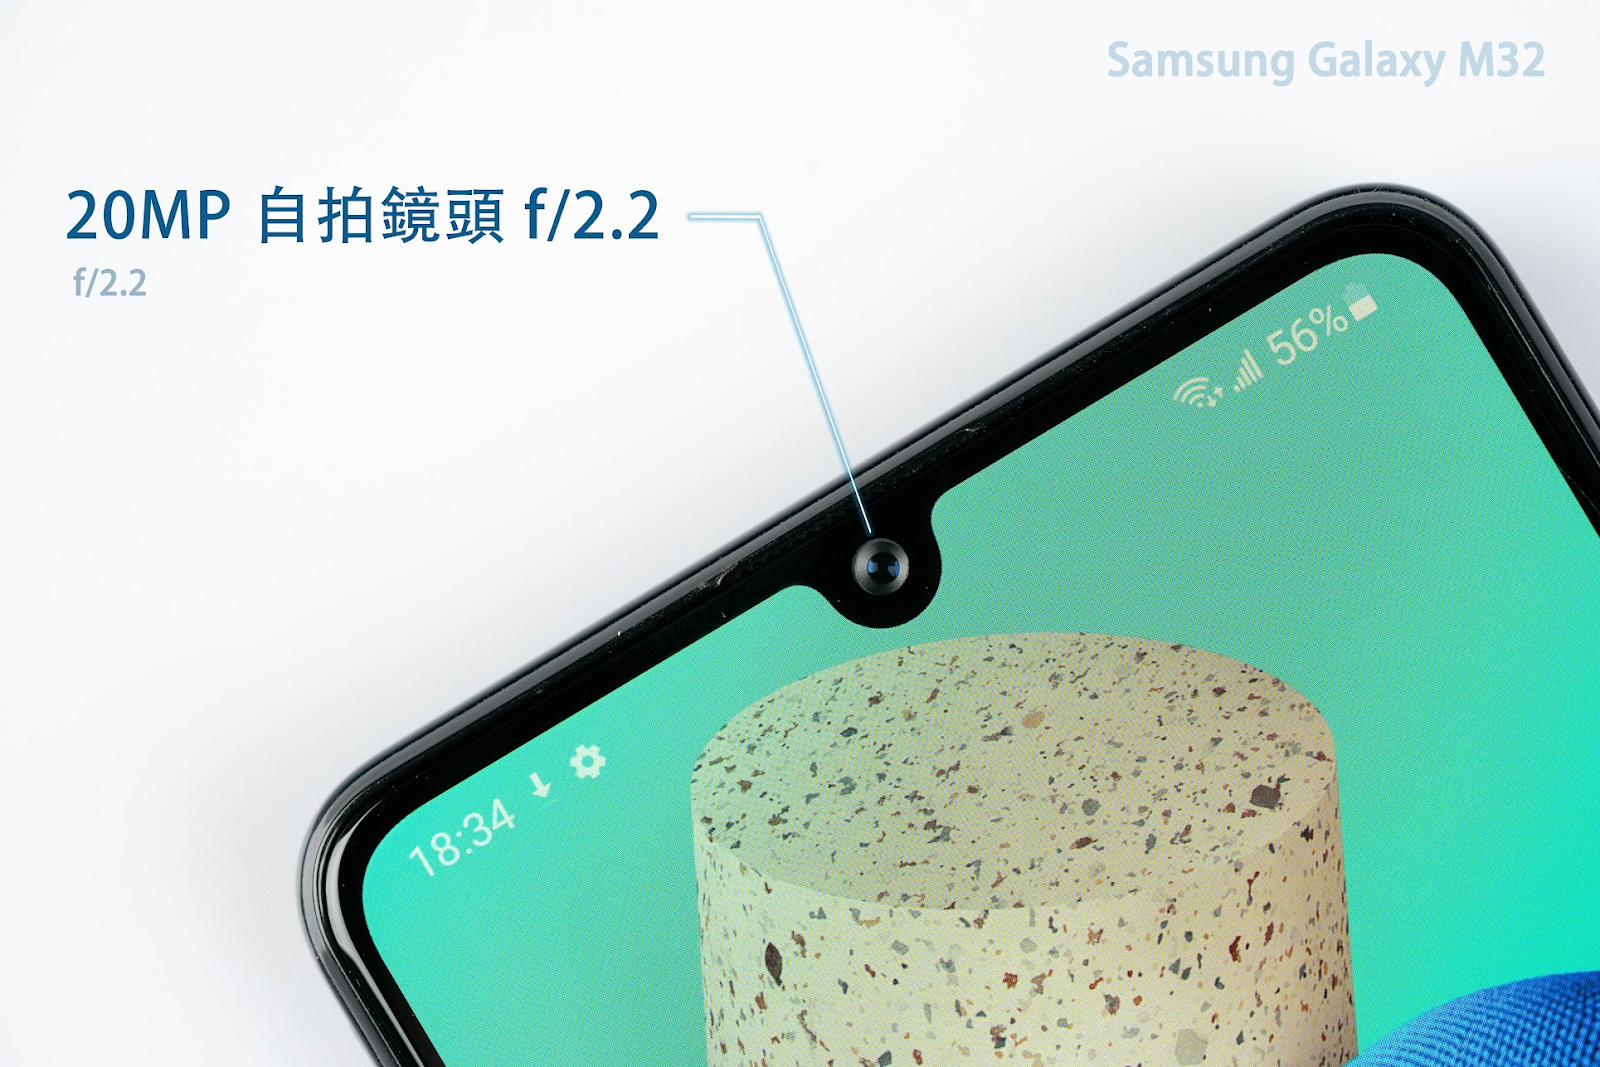 越級體驗！Samsung Galaxy M32 開箱評測 評價 優缺點｜4G + 4G 雙卡雙待、90HZ 螢幕、Super AMOLED、25W 快充、規格對比 Galaxy M12、三星手機 便宜｜科技狗 - Galaxy, M32, PTT, Samsung, Samsung Galaxy M32, 三星, 三星手機, 台灣三星, 平價手機, 手機, 開箱上手, 體驗 - 科技狗 3C DOG